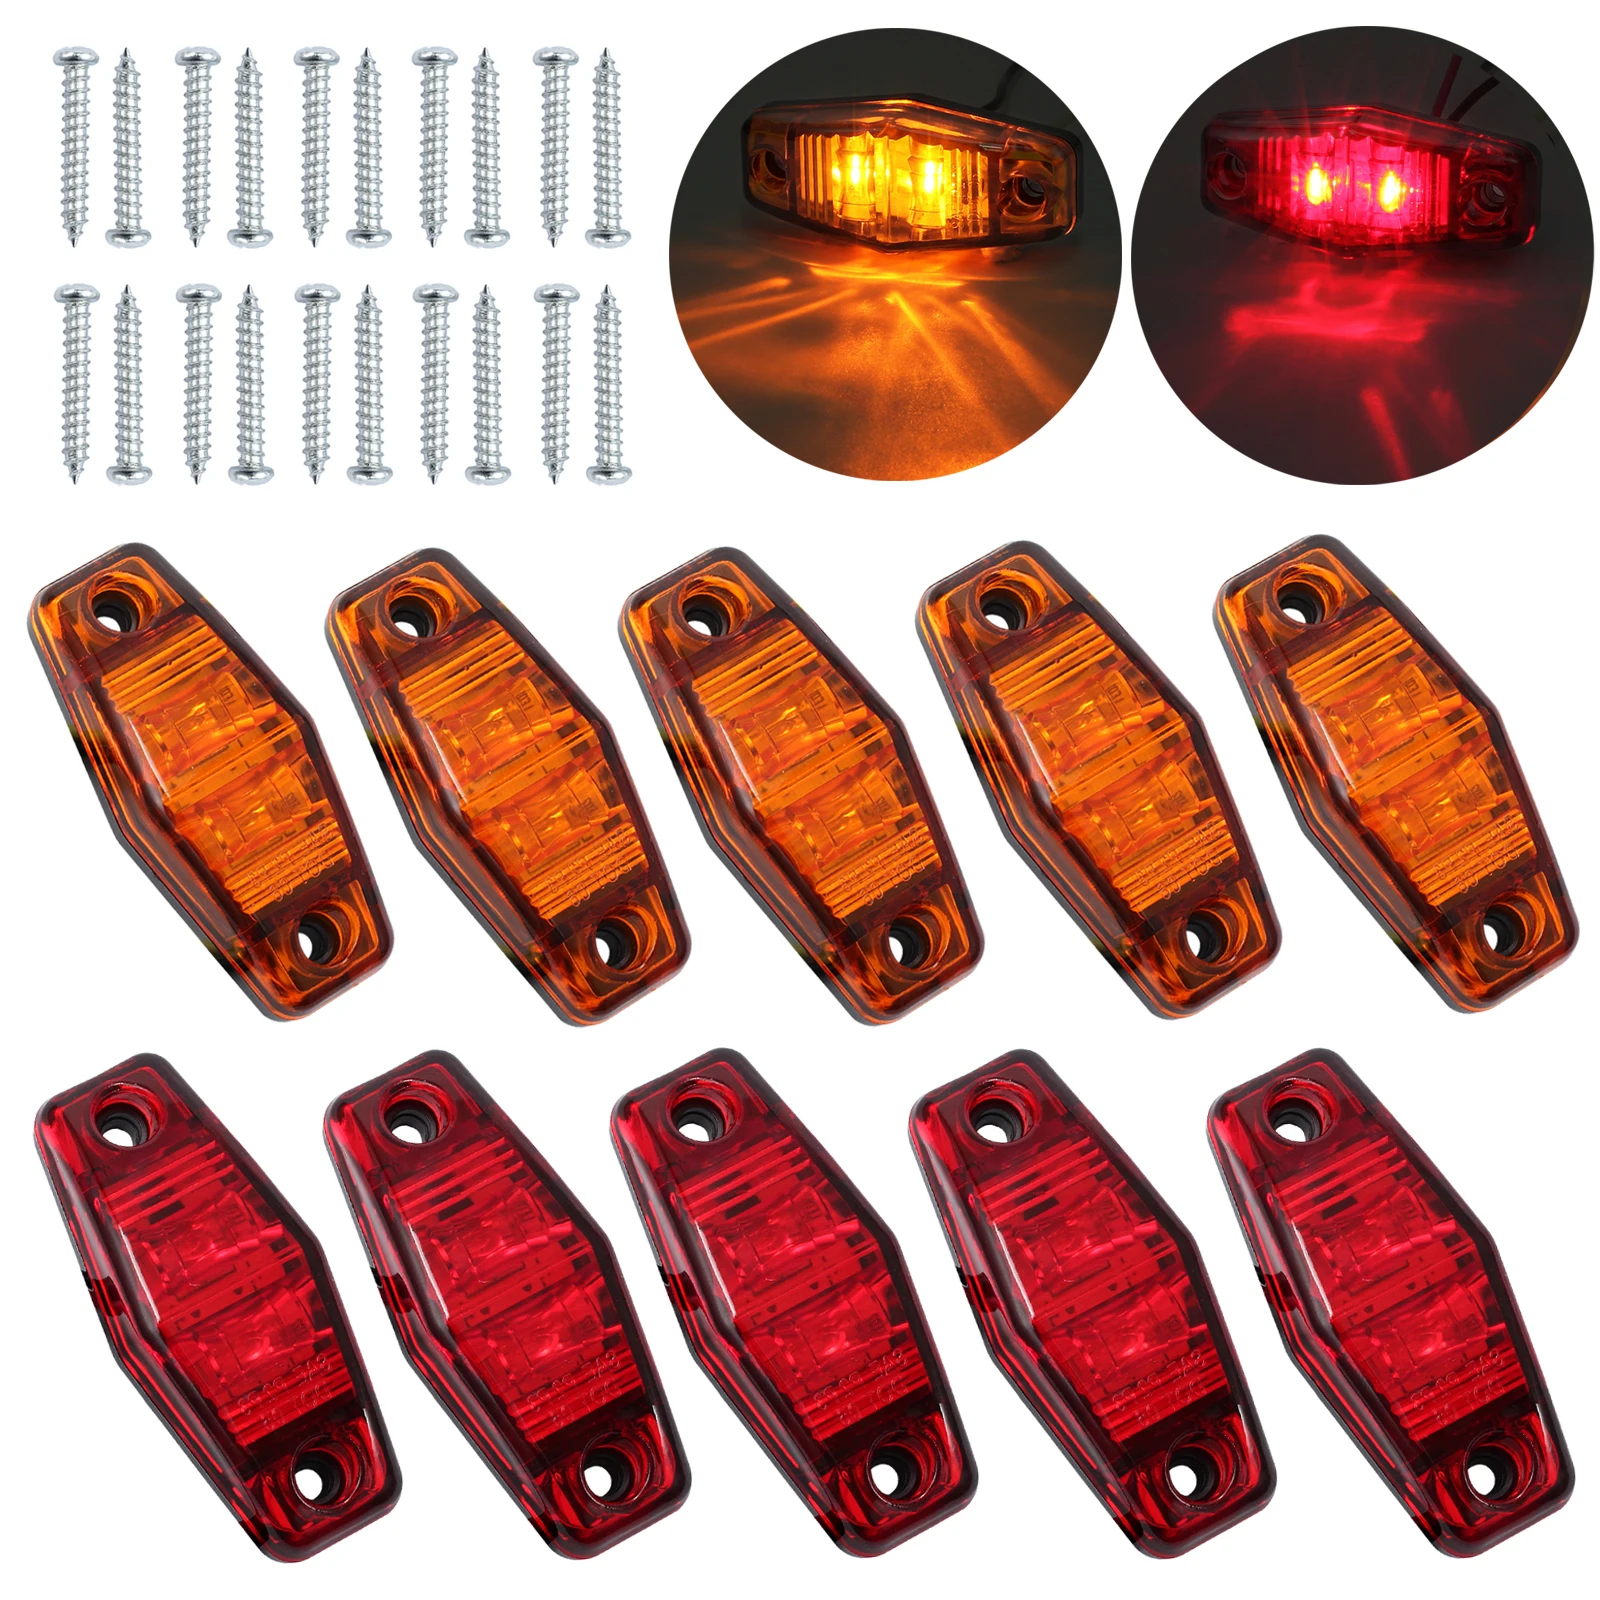 Autolet 10 шт. светодиодные, боковые, габаритные фонари, автомобильные Внешние фонари, автомобильные лампы для прицепа, грузовика, 5 шт. янтарные+ 5 шт. красный задний светильник